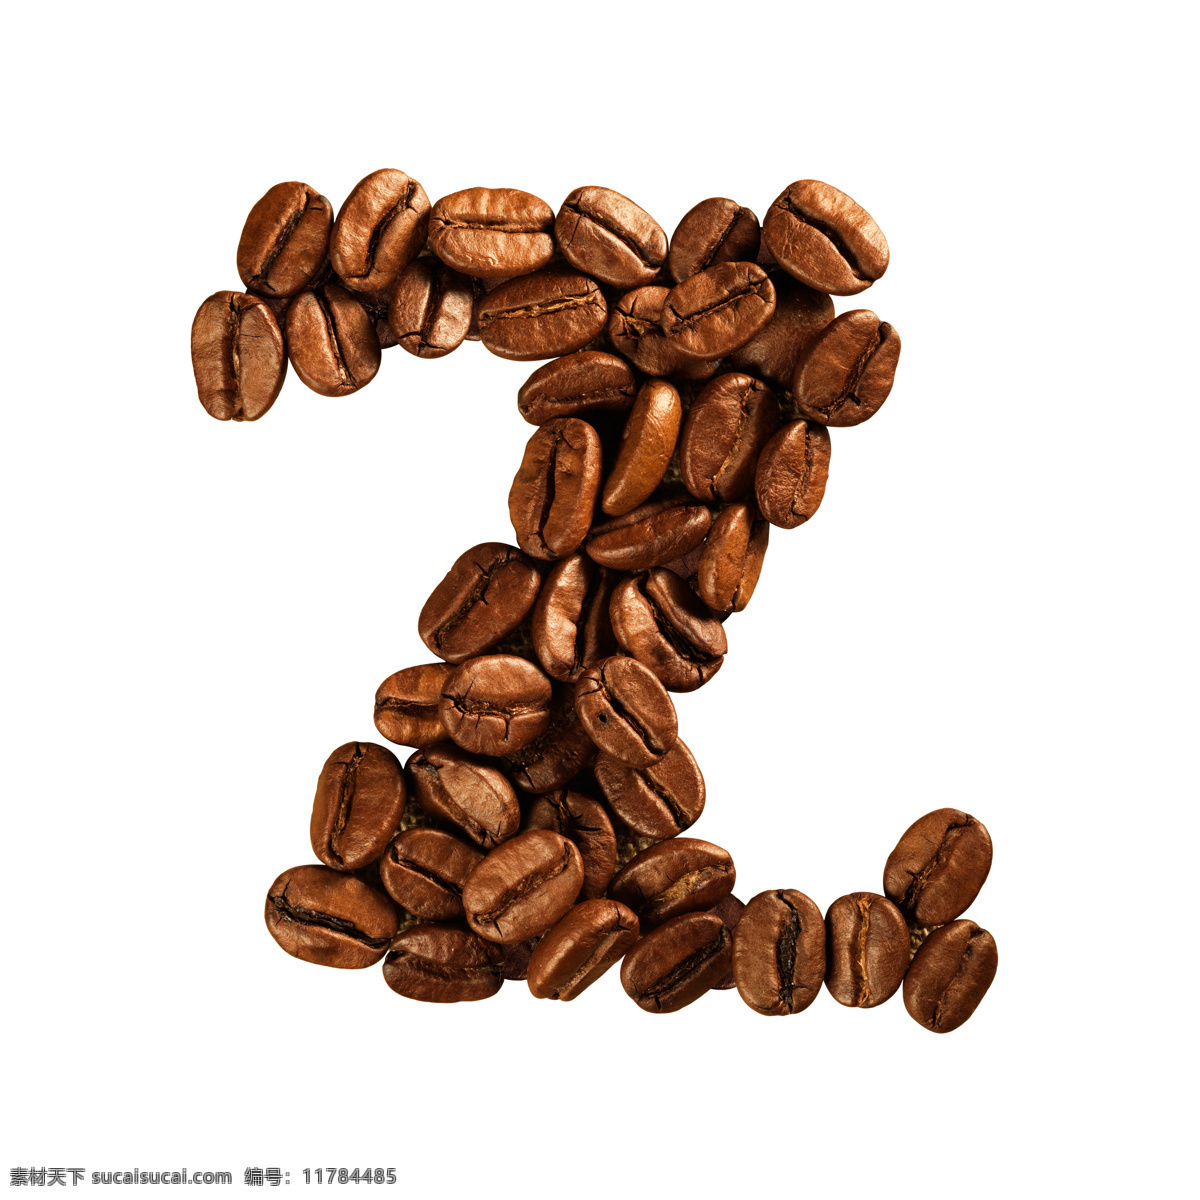 咖啡豆 组成 字母 z 咖啡 文字 艺术字体 书画文字 文化艺术 白色